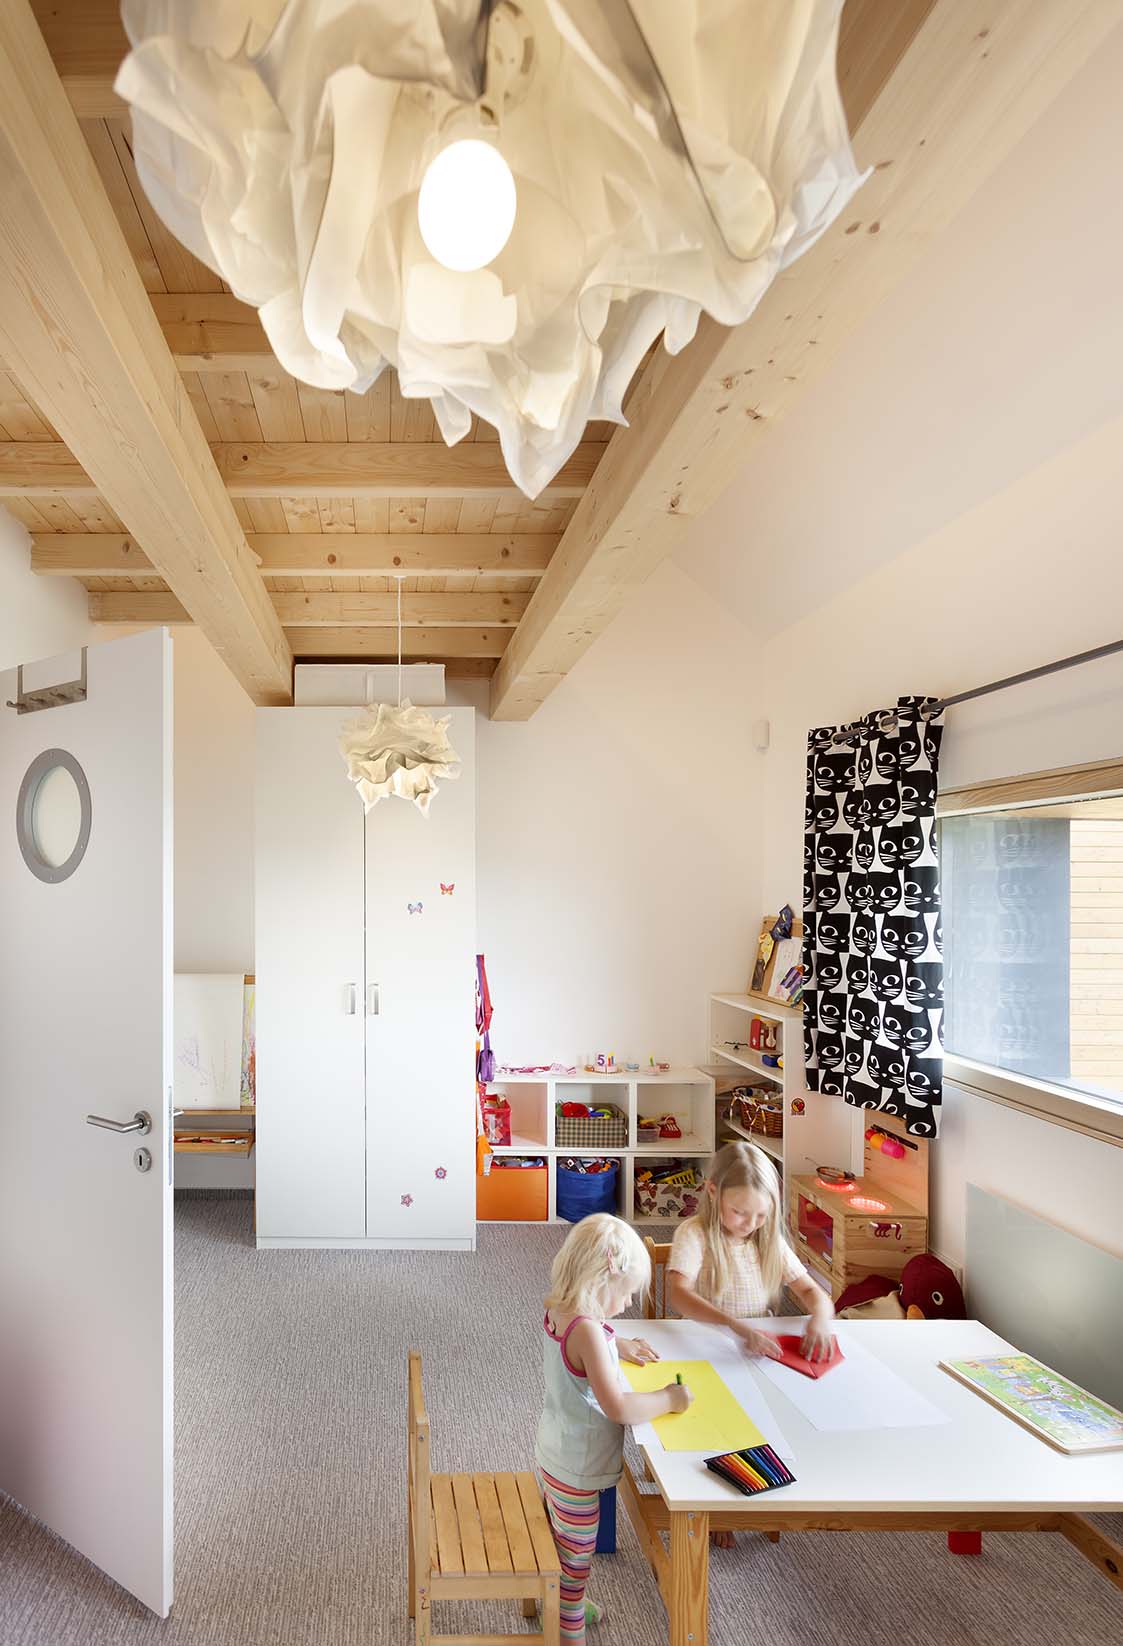 Dětský pokoj je zatím jako jedna místnost, ale prostor je už dopředu řešený tak, aby ho bylo možné později rozdělit na dvě místnosti.